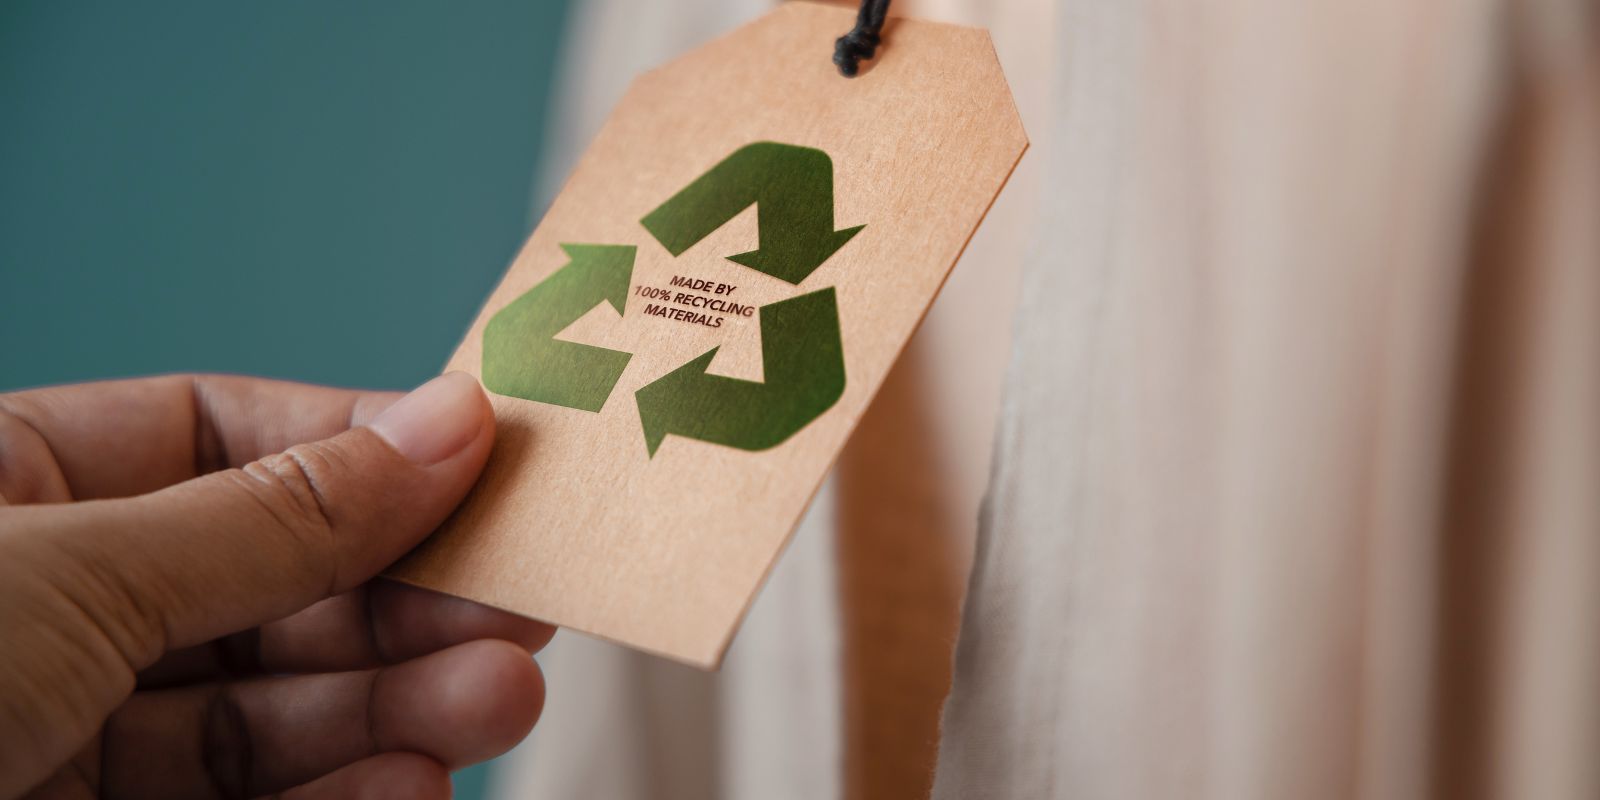 Das Bild zeigt ein Recyclingzeichen von Fasergussverpackungen.